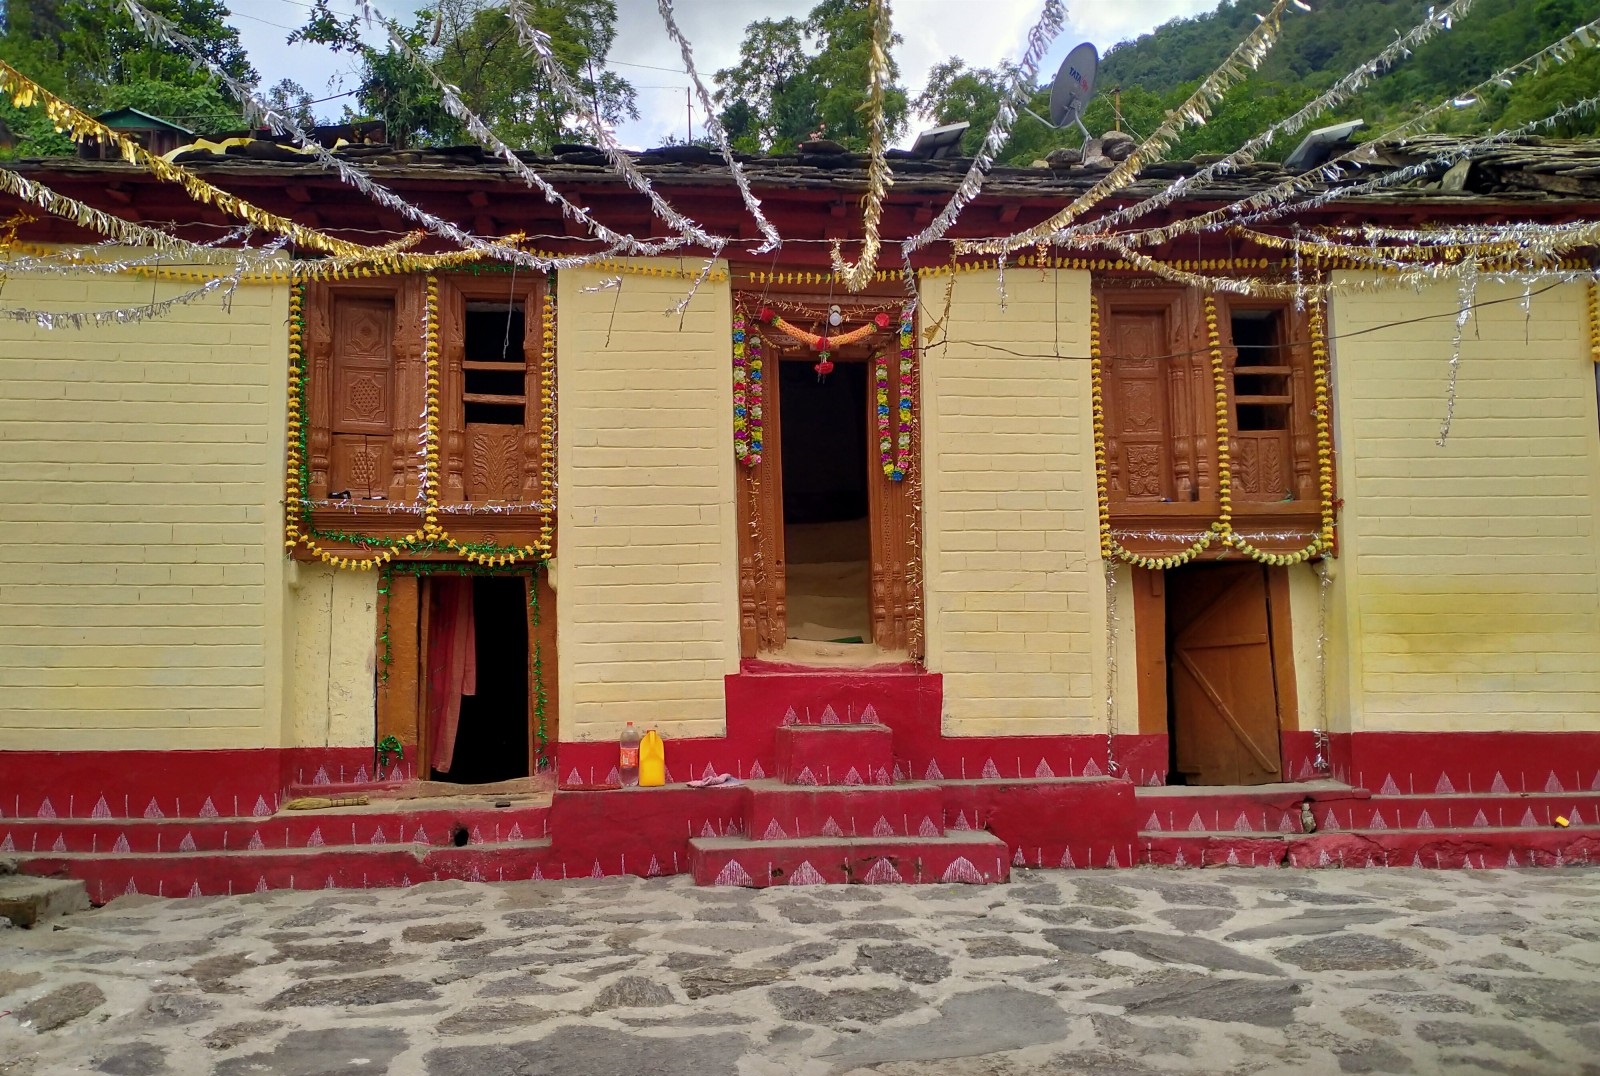 Dhapa village, Pithoragarh